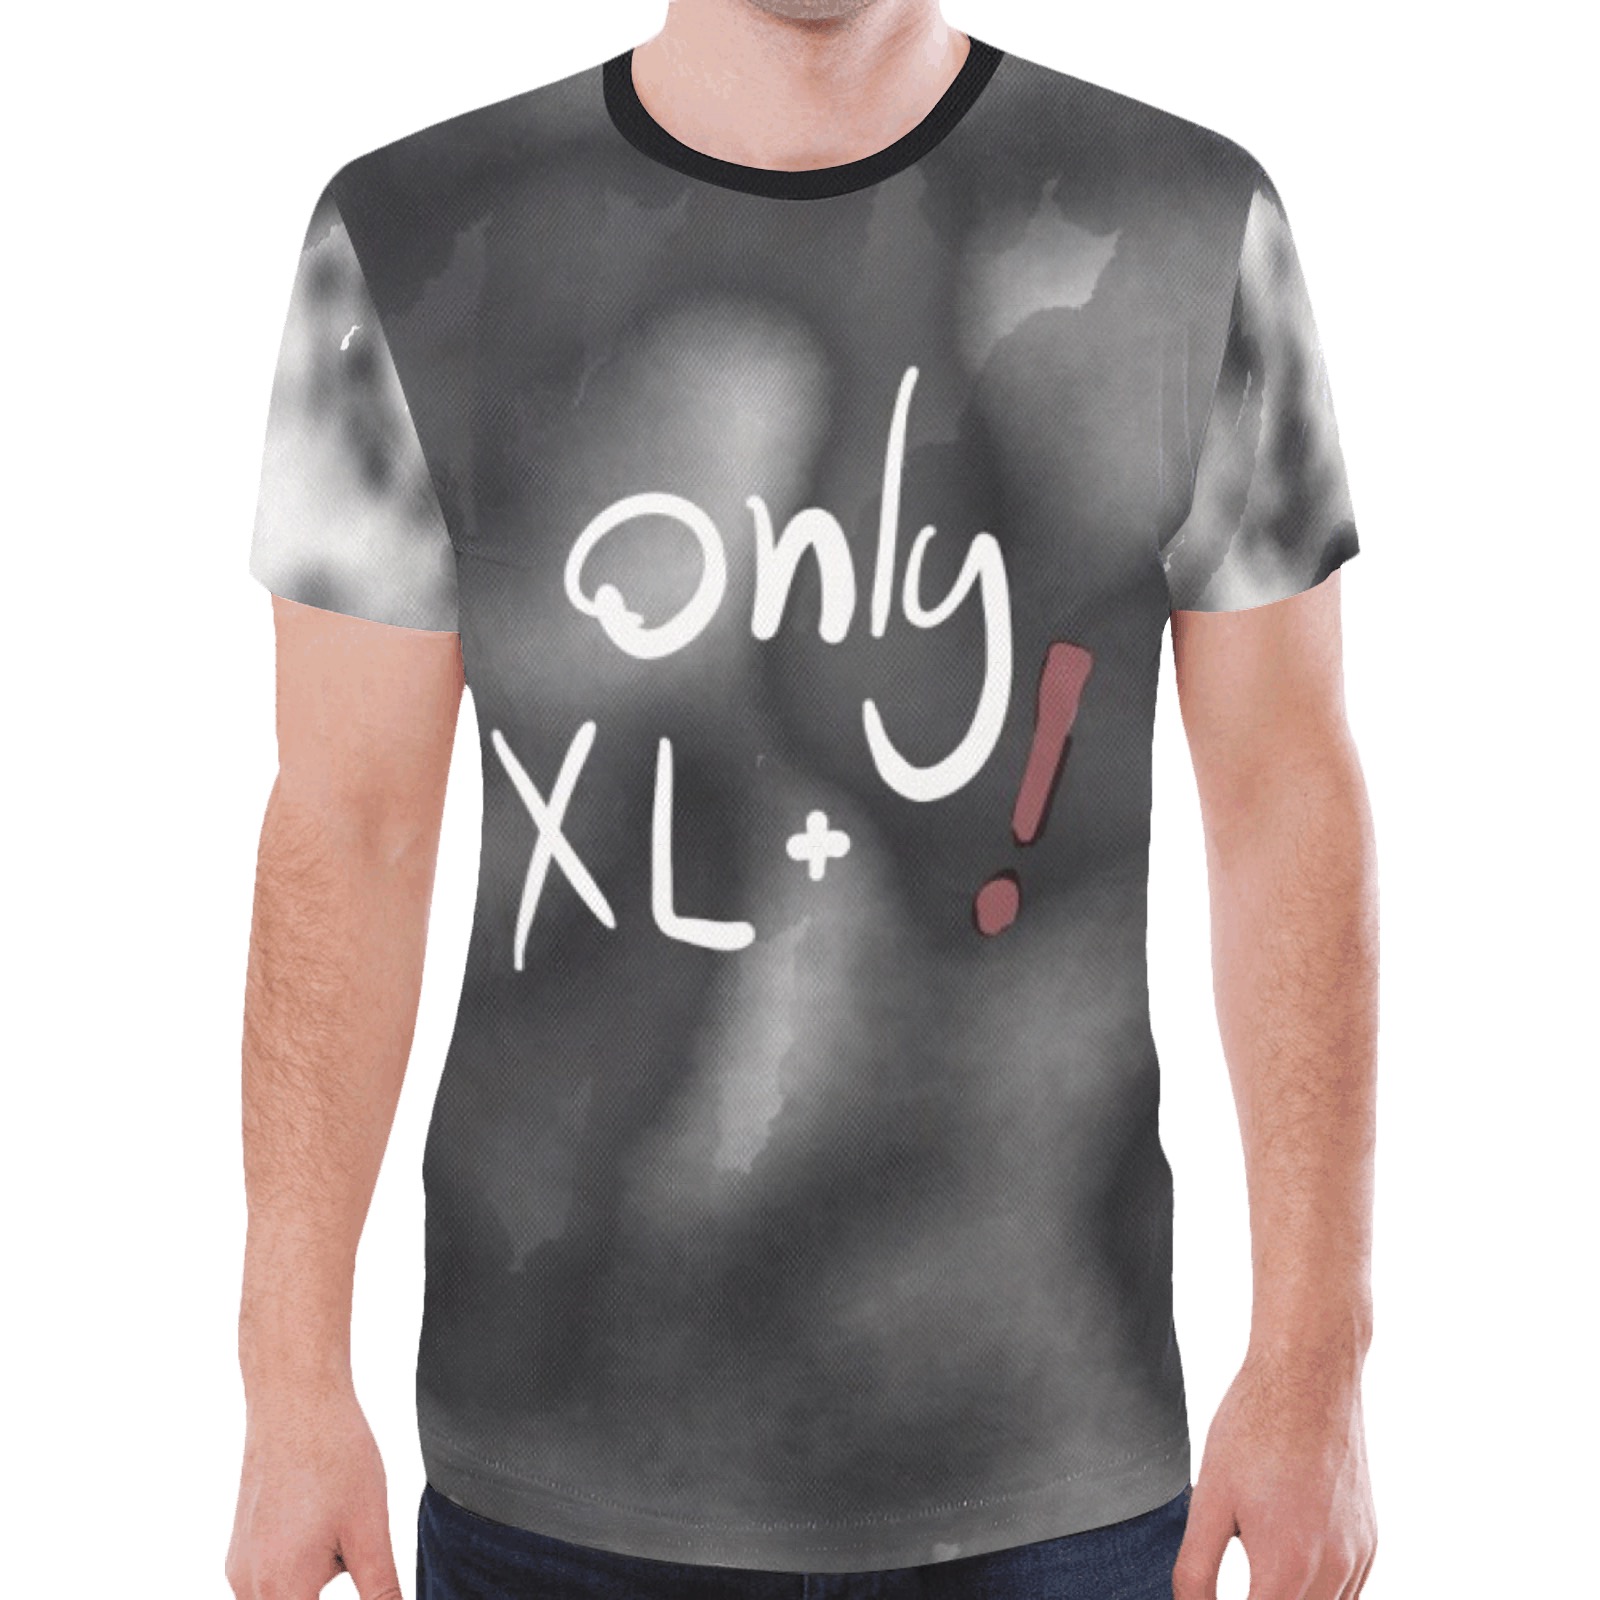 onlyxl New All Over Print T-shirt for Men (Model T45)